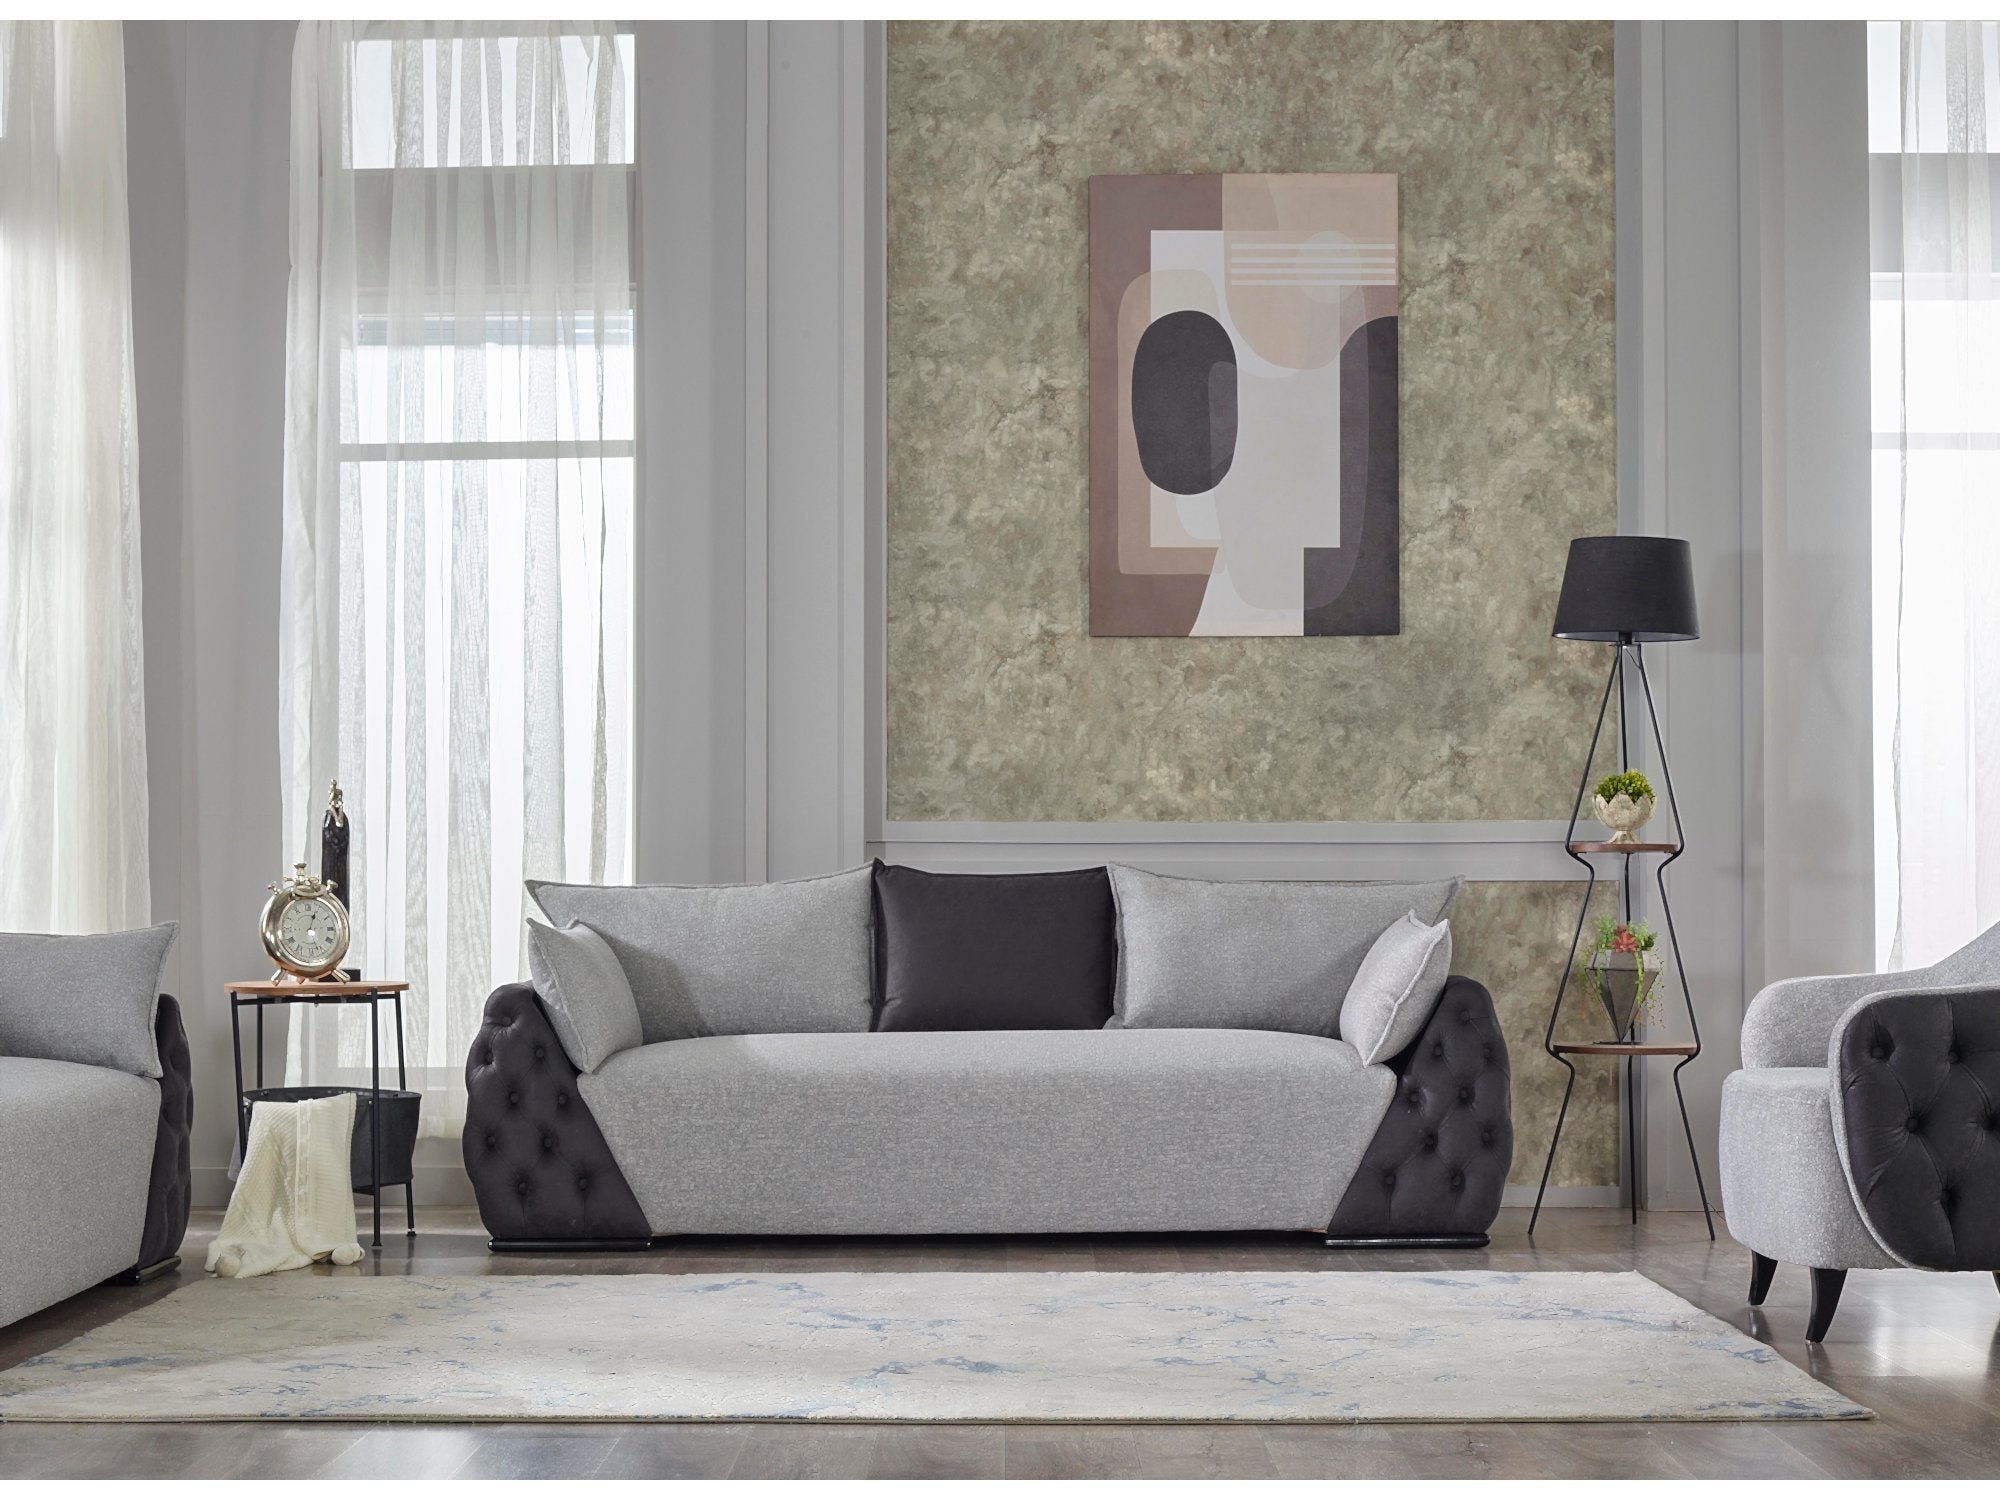 Wego Stationary Livingroom Set (2 Sofa & 2 Chair)